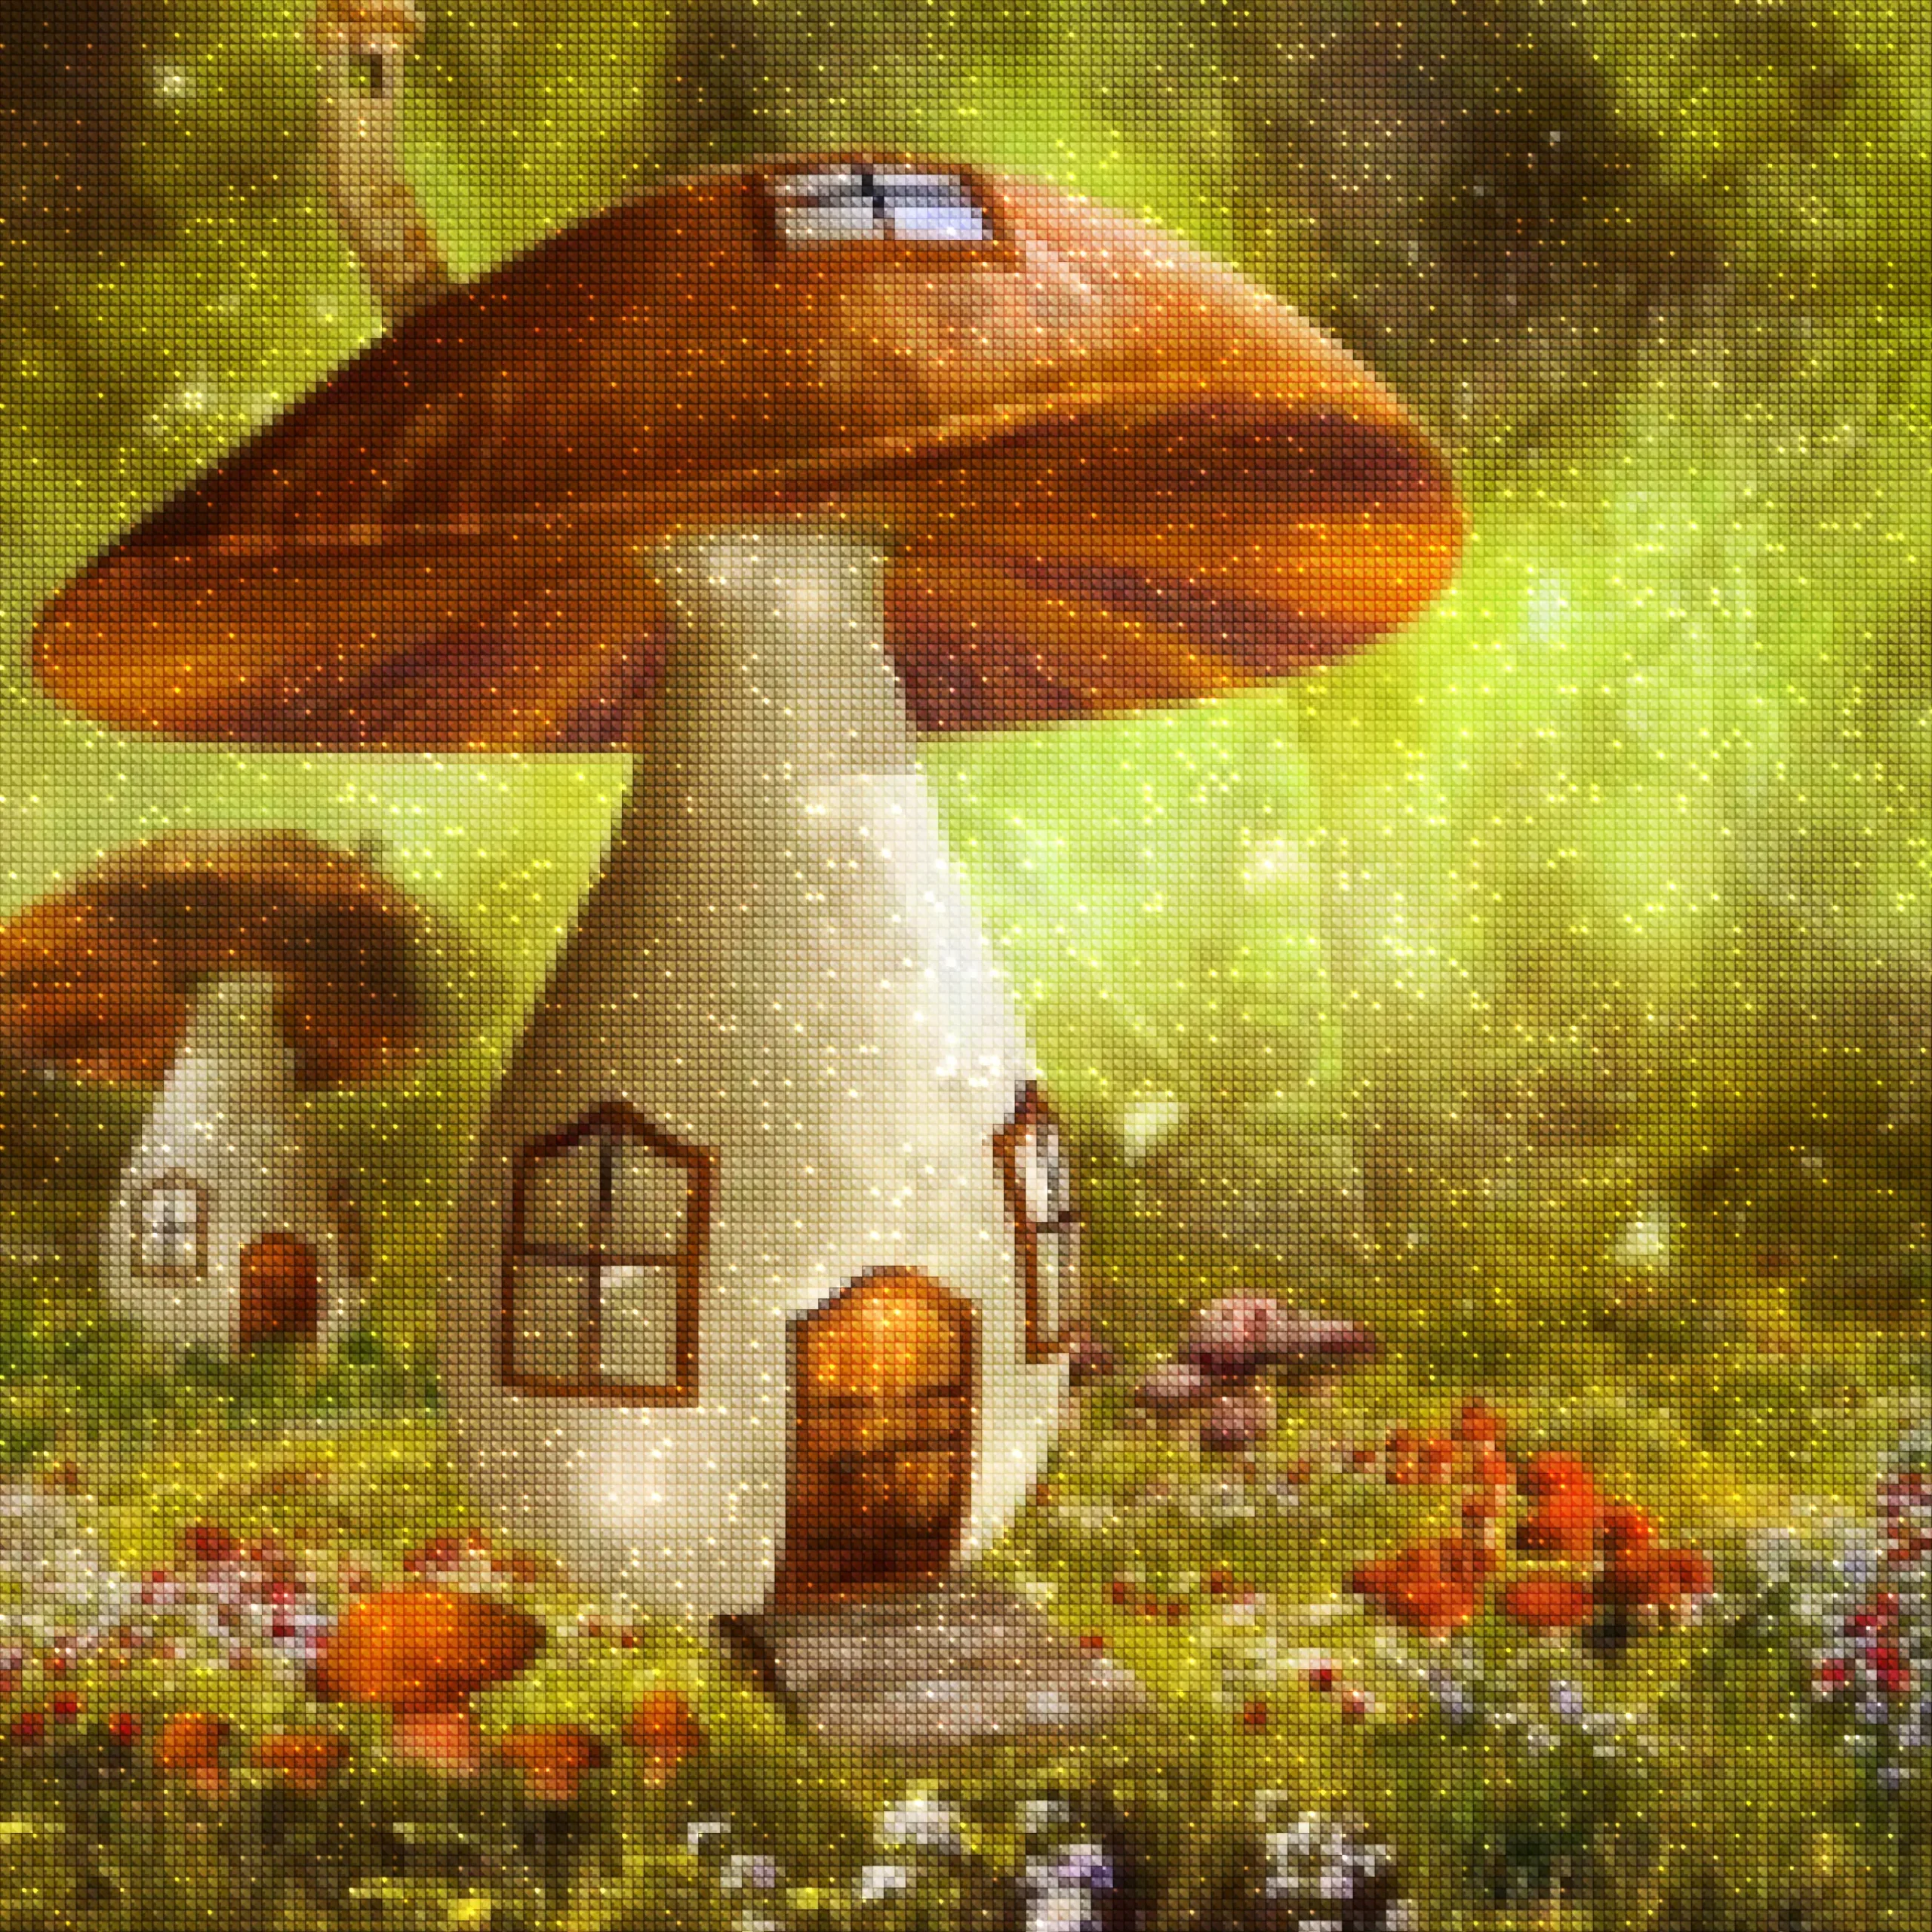 diamanten-wizard-diamond-painting-kits-Fantasie-Mushroom-The Mushroom House-diamonds.webp